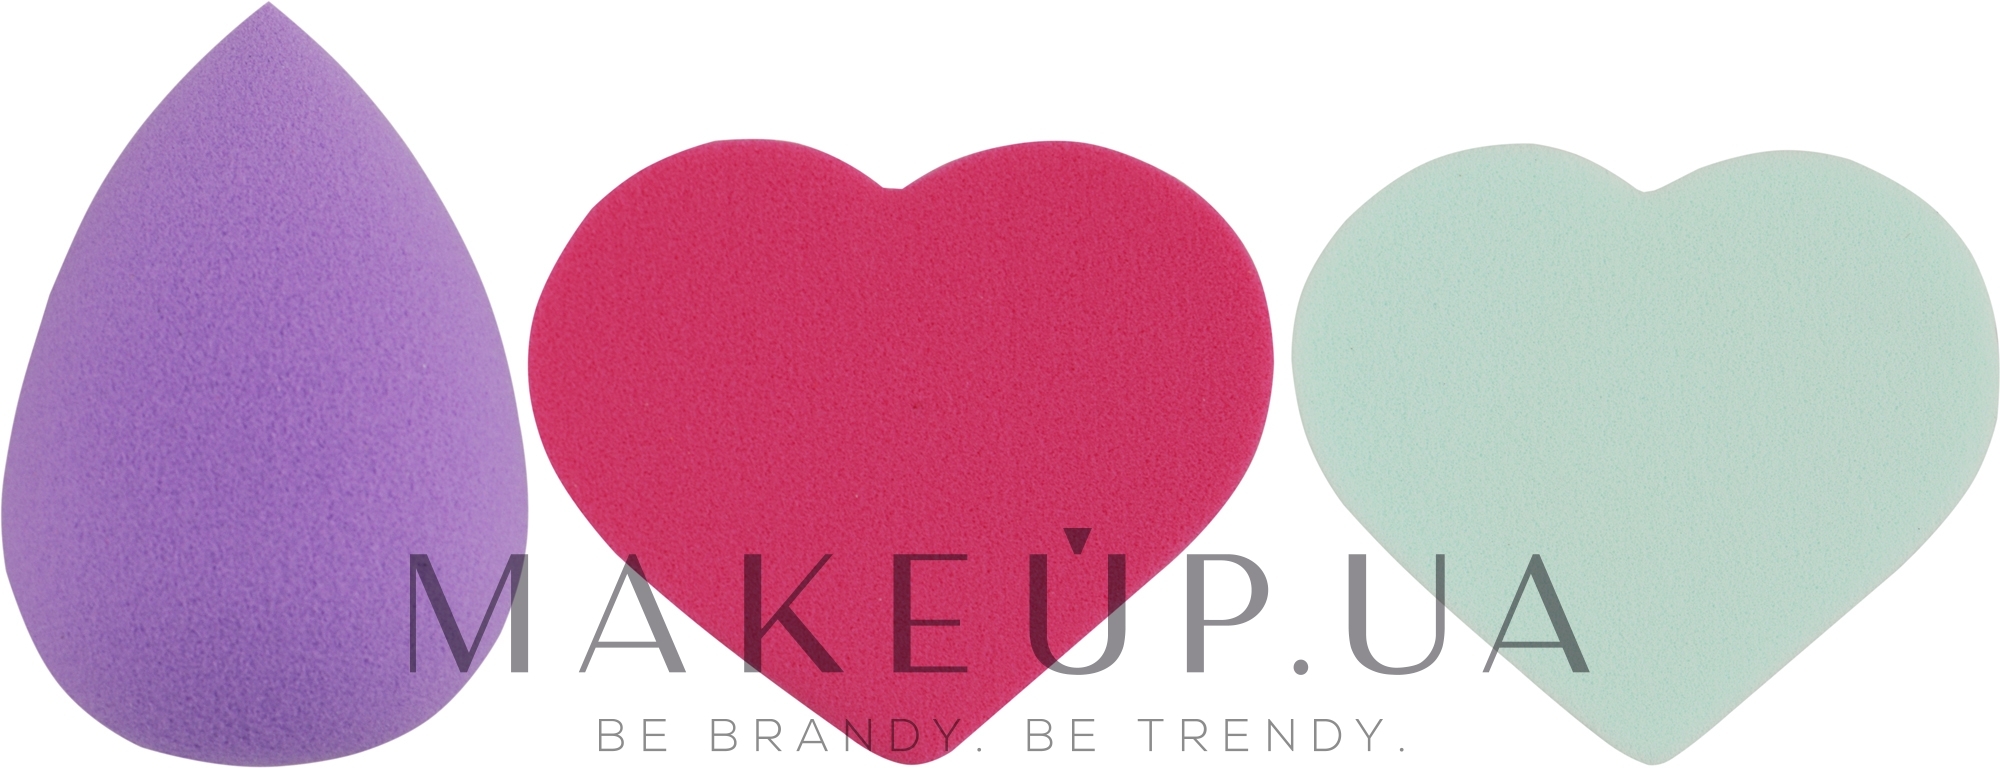 Набор спонжей для макияжа Beauty Blender, капля + 2 сердце, MIX (фиолетовый + малиновый + светло-мятный) - Puffic Fashion PF-229 — фото 3шт